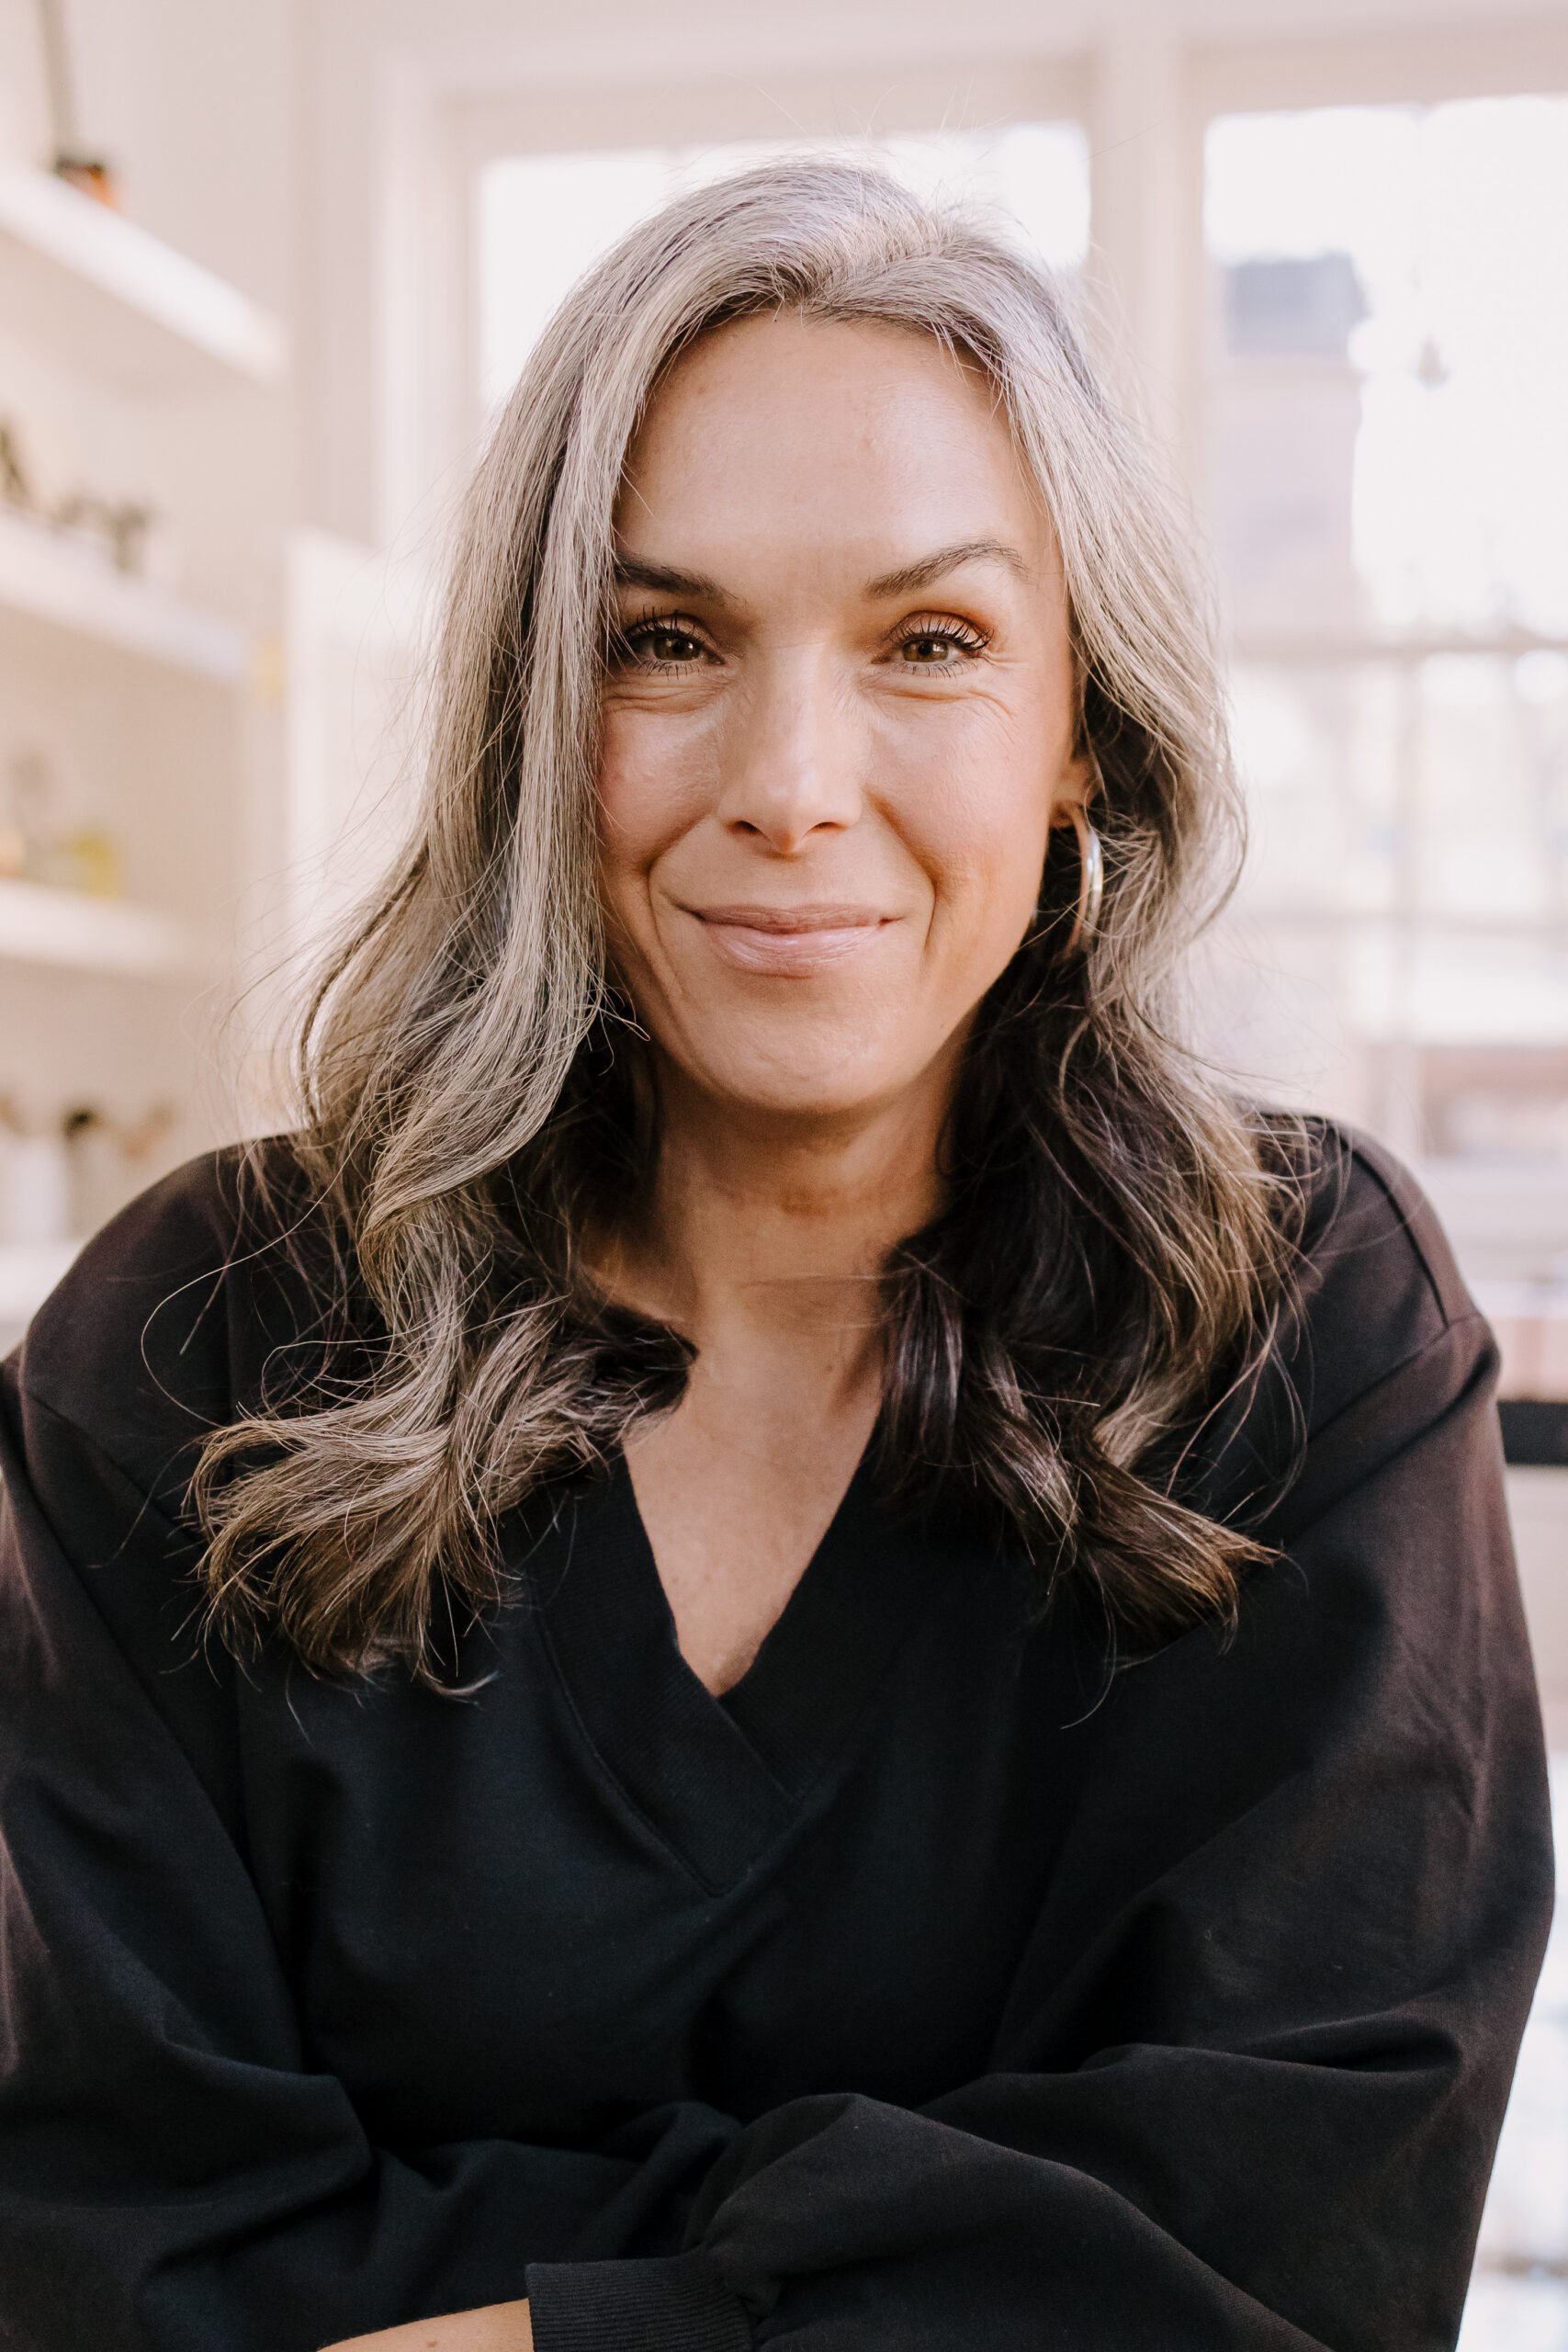 A headshot of a woman with medium length gray hair.